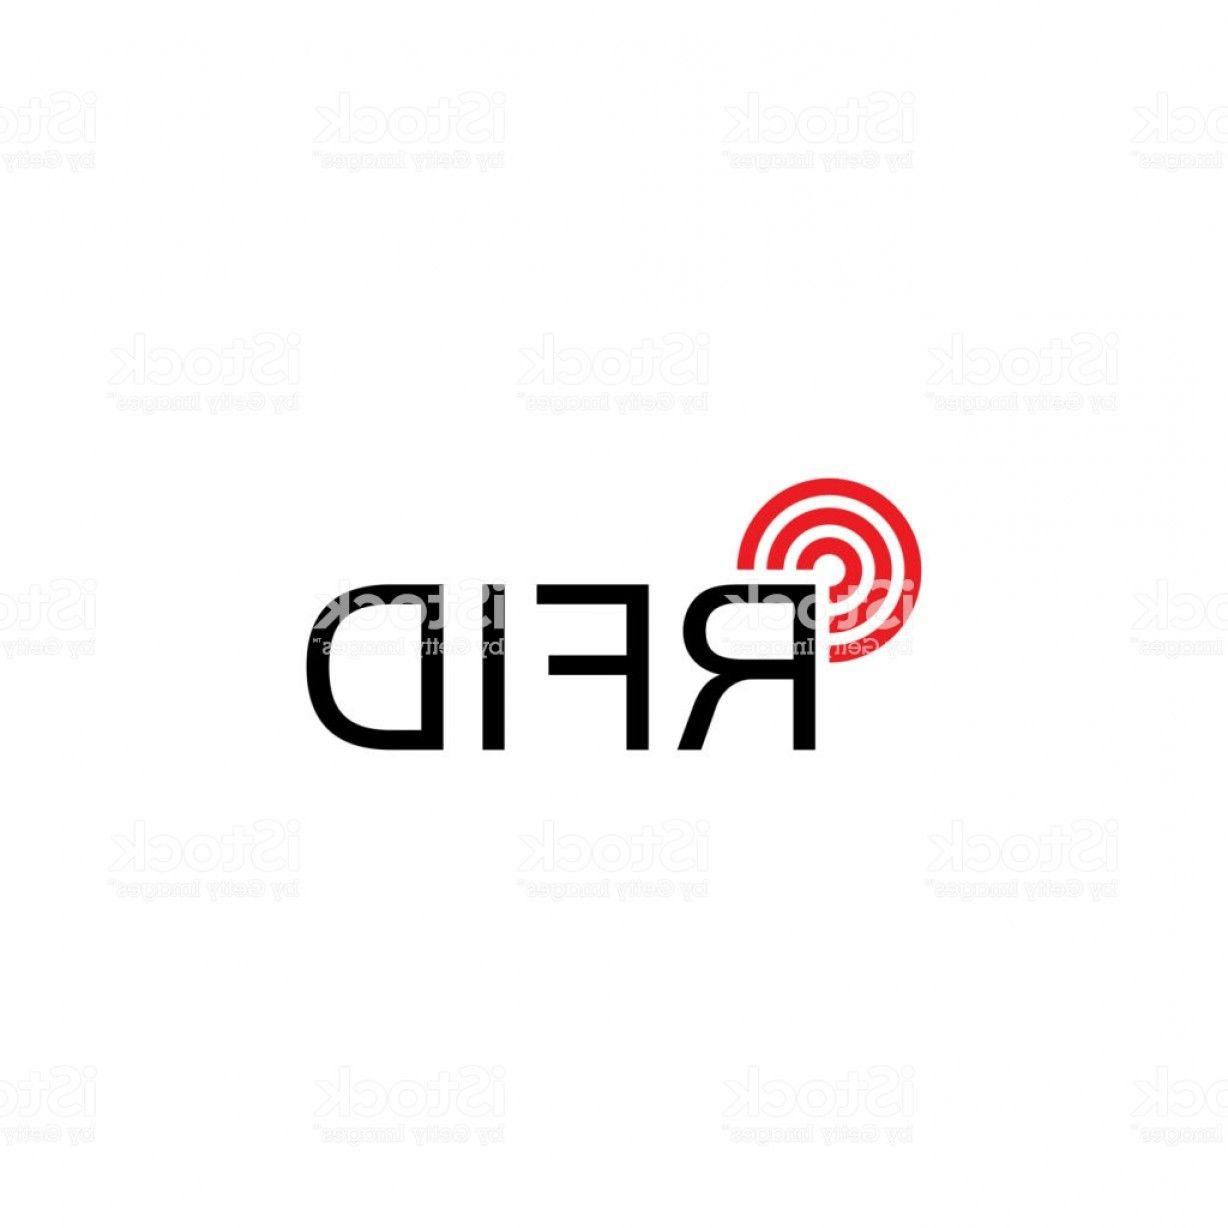 RFID Logo - Rfid Logo Radio Frequency Identification Gm